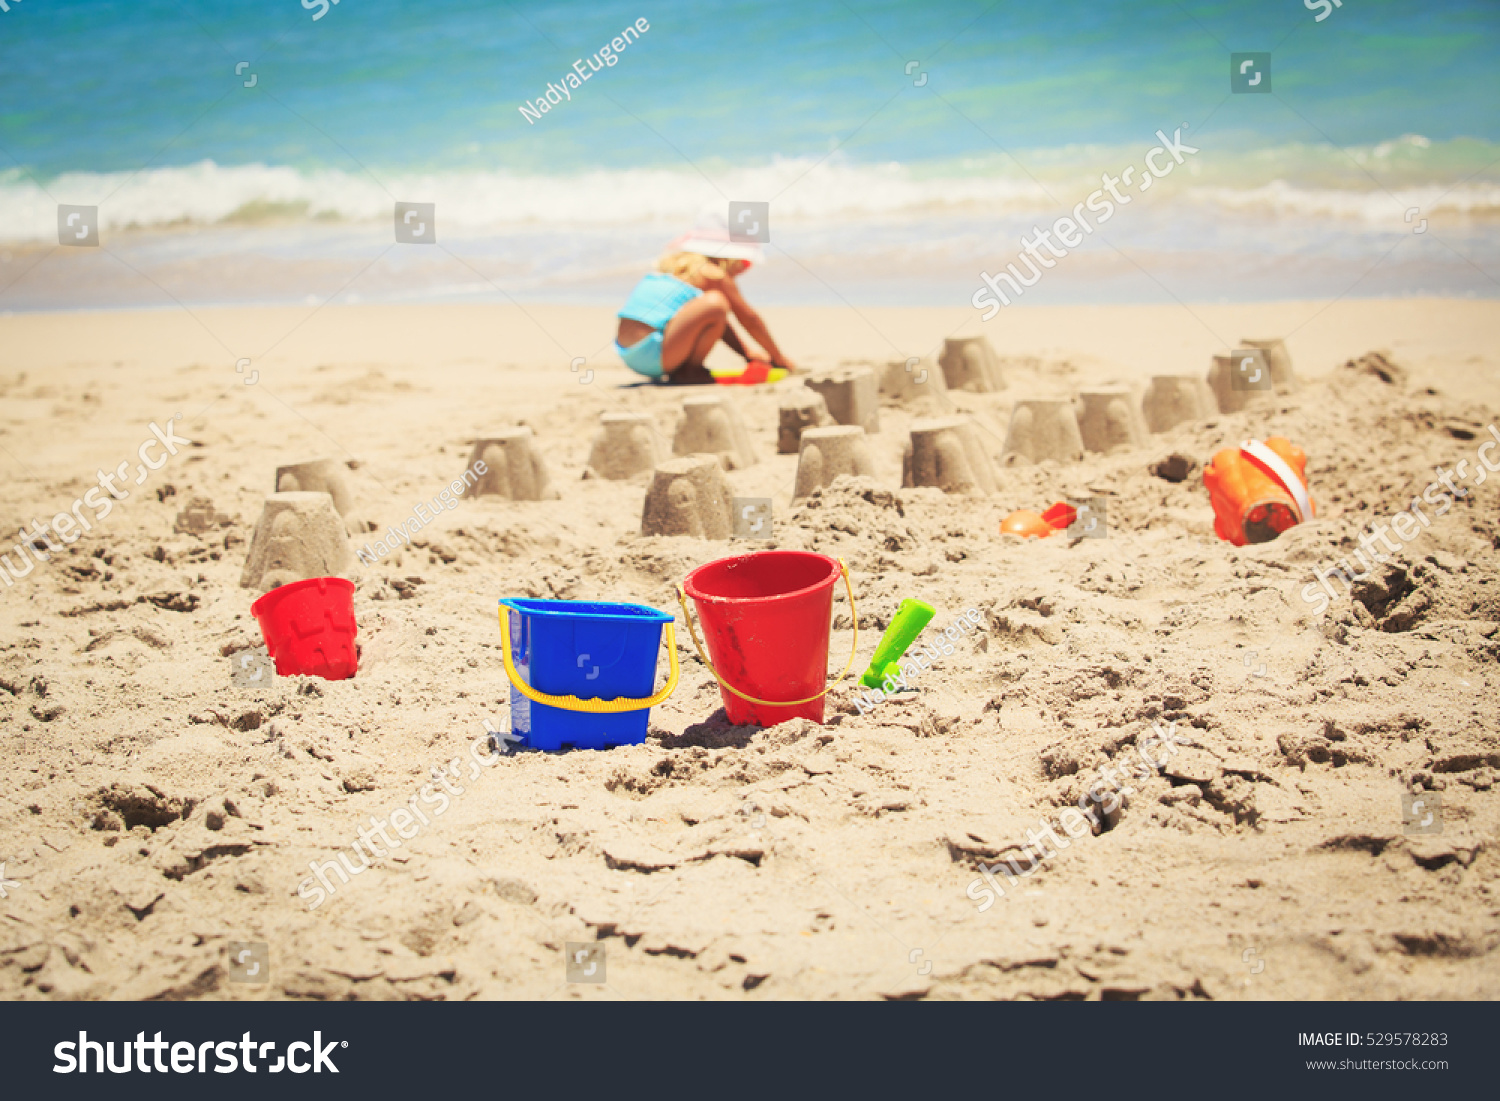 Kids Toys Little Girl Building Sandcastle Stock Photo 529578283 ...